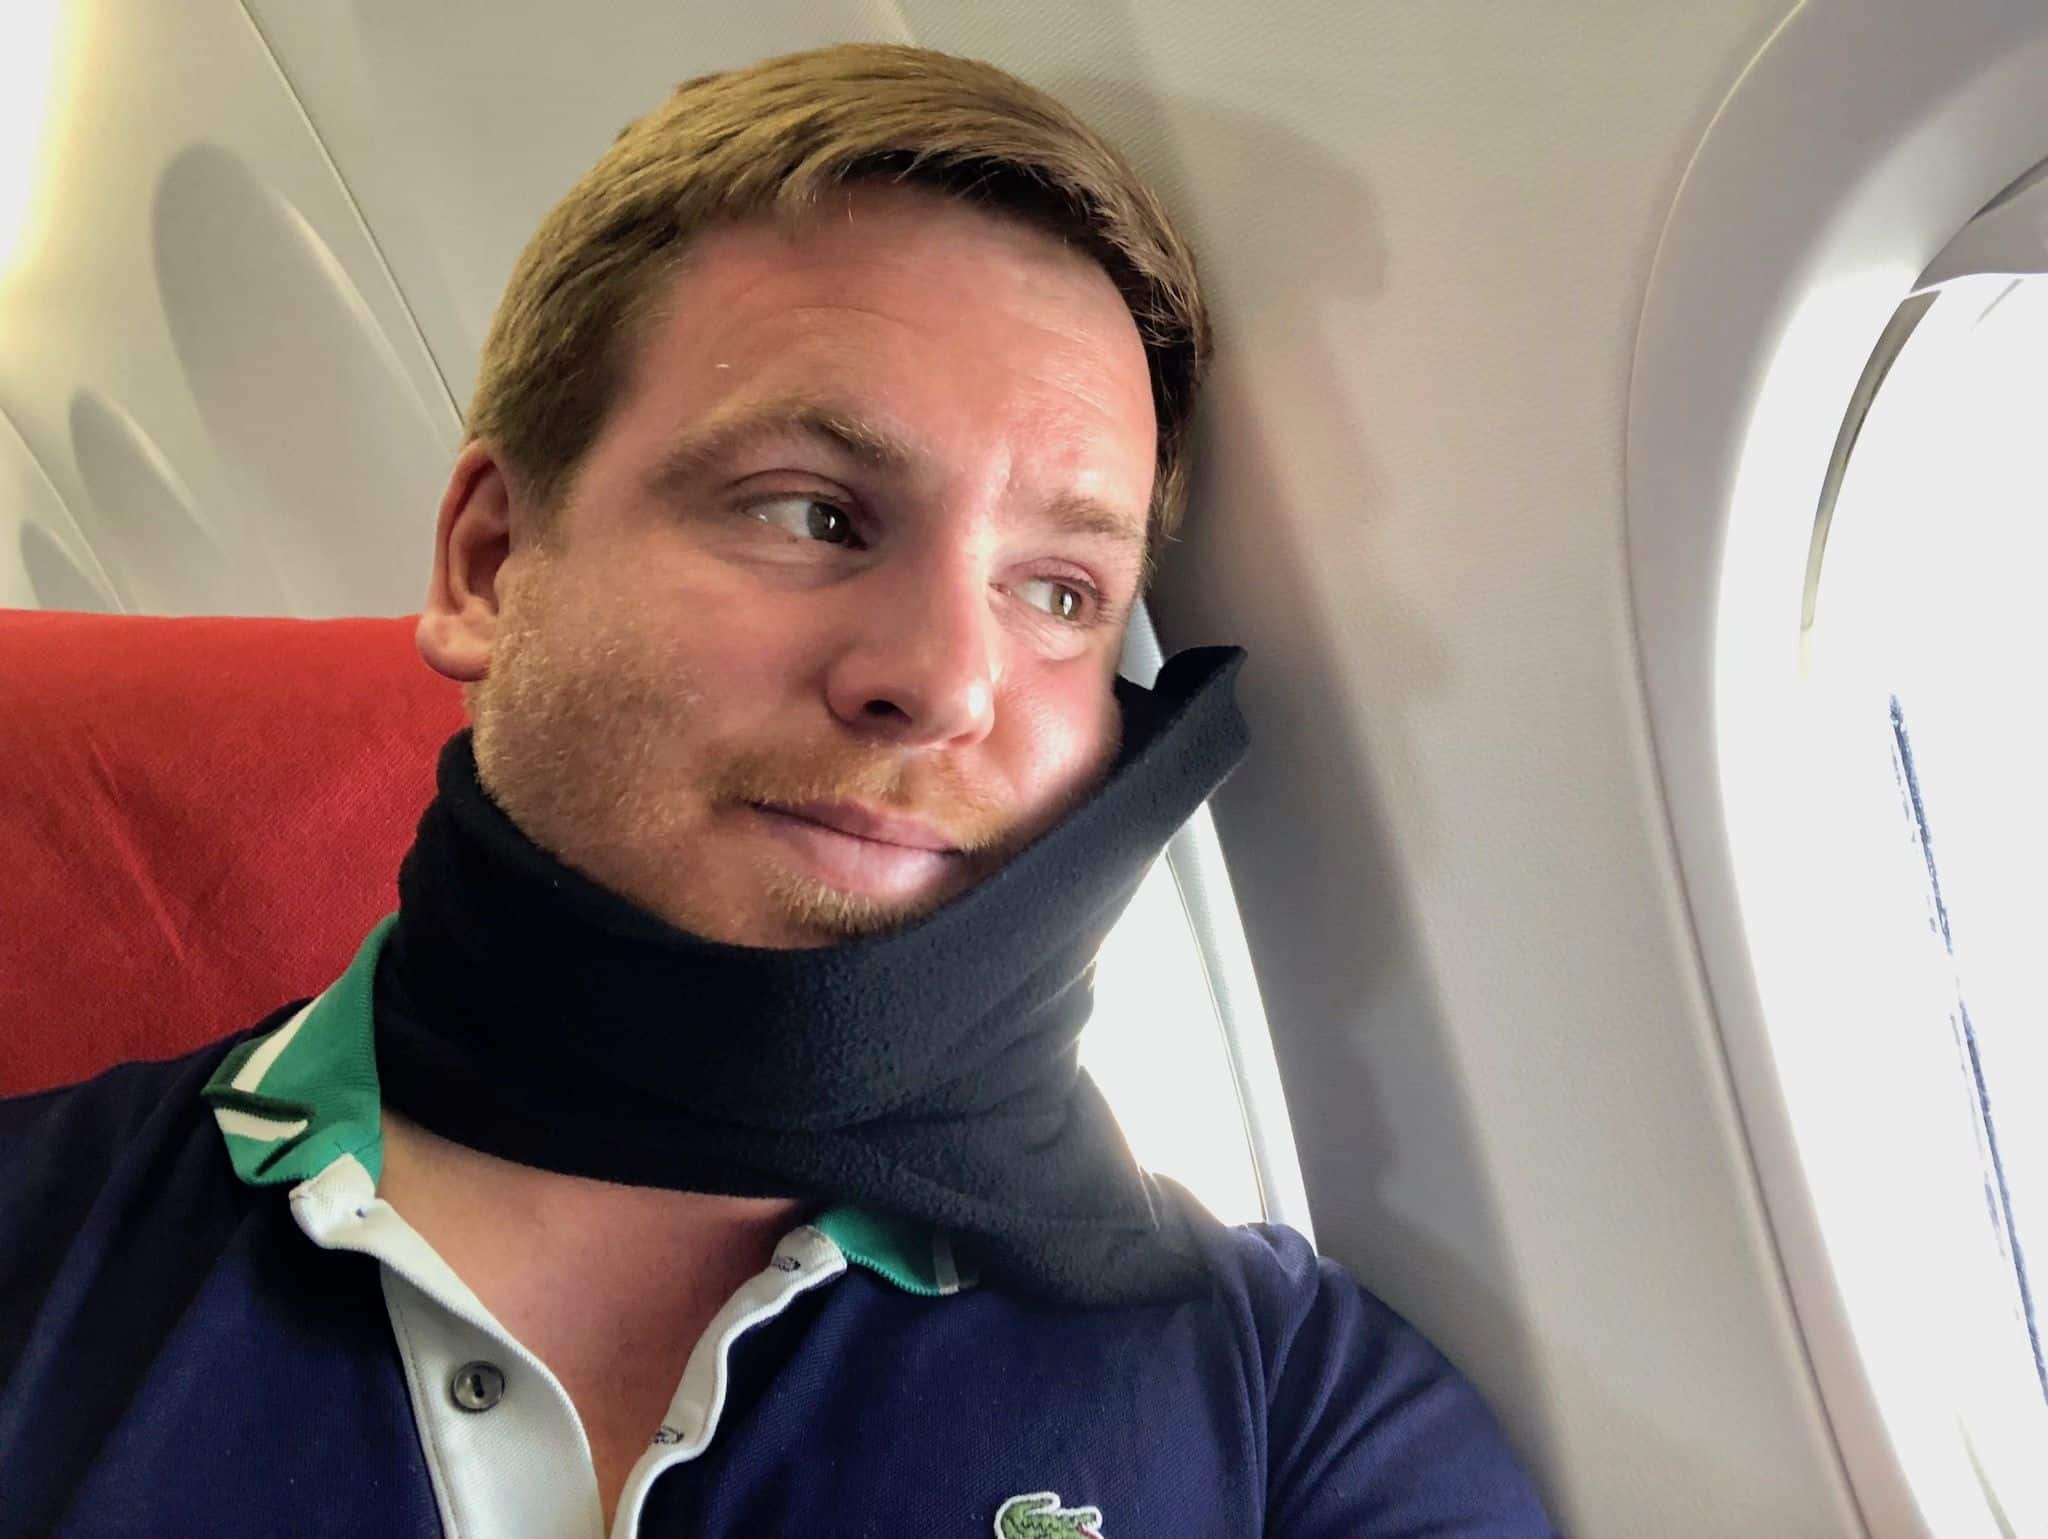 Nackenkissen auf Reisen im Test: Wie schlägt sich das trtl Pillow?